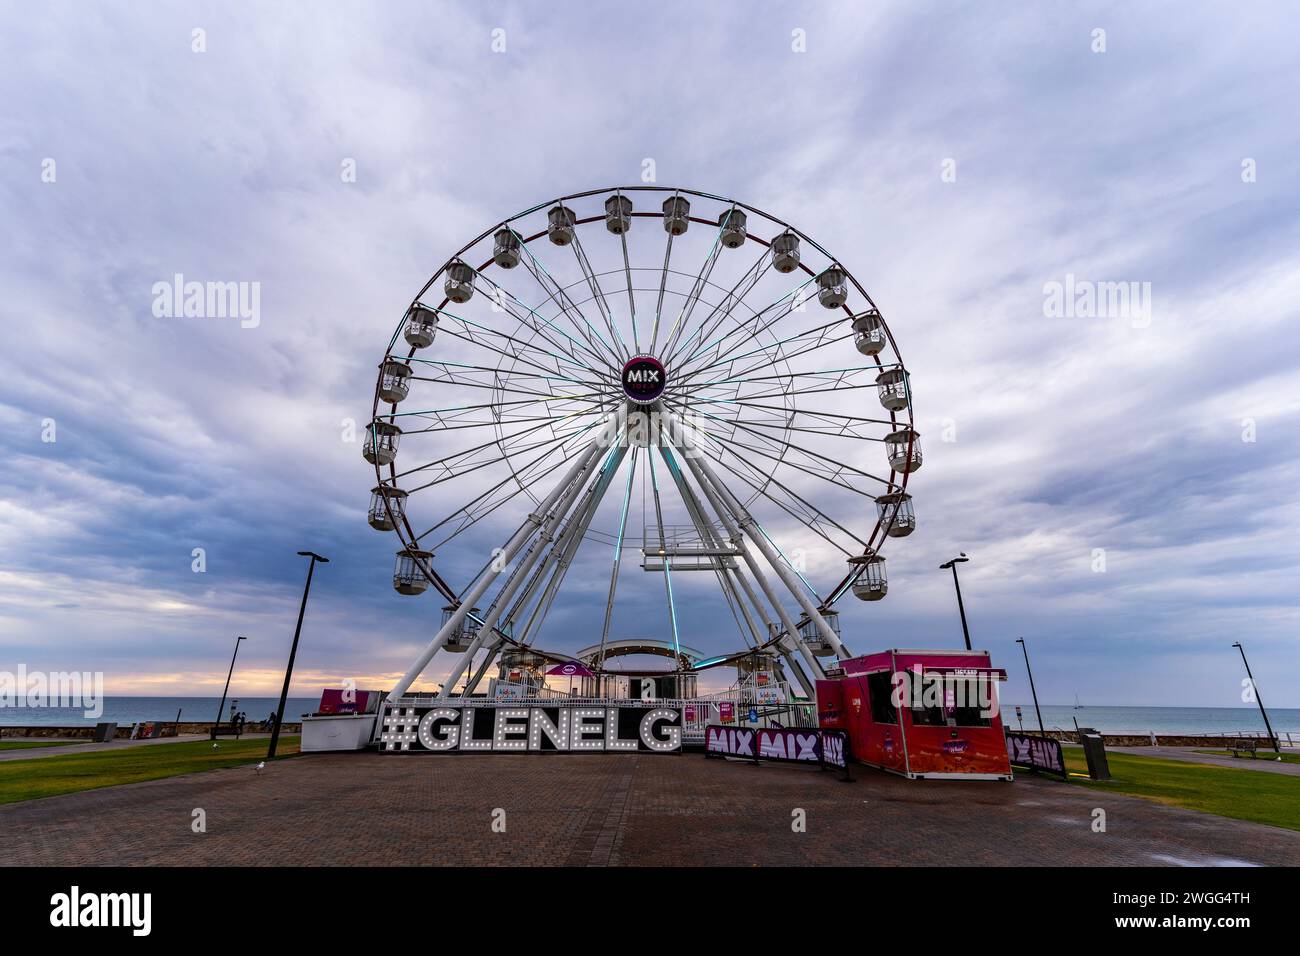 La roue Skyline à Glenelg. Adélaïde, Australie méridionale. Banque D'Images